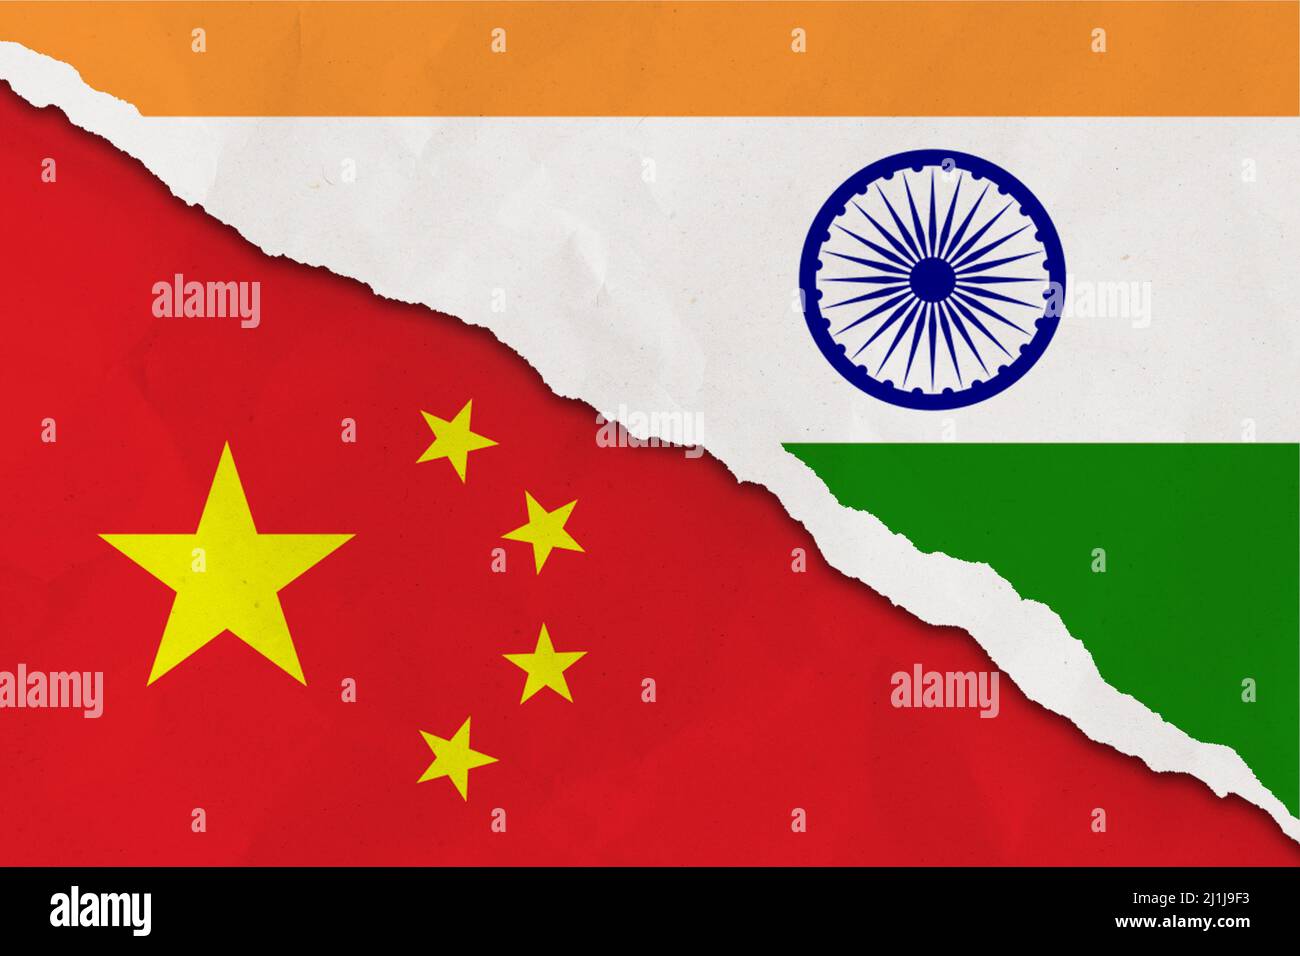 Le drapeau de la Chine et de l'Inde a déchiré le papier grunge arrière-plan. Résumé l'économie de la Chine et de l'Inde, les conflits politiques, la texture du concept de guerre contexte Banque D'Images